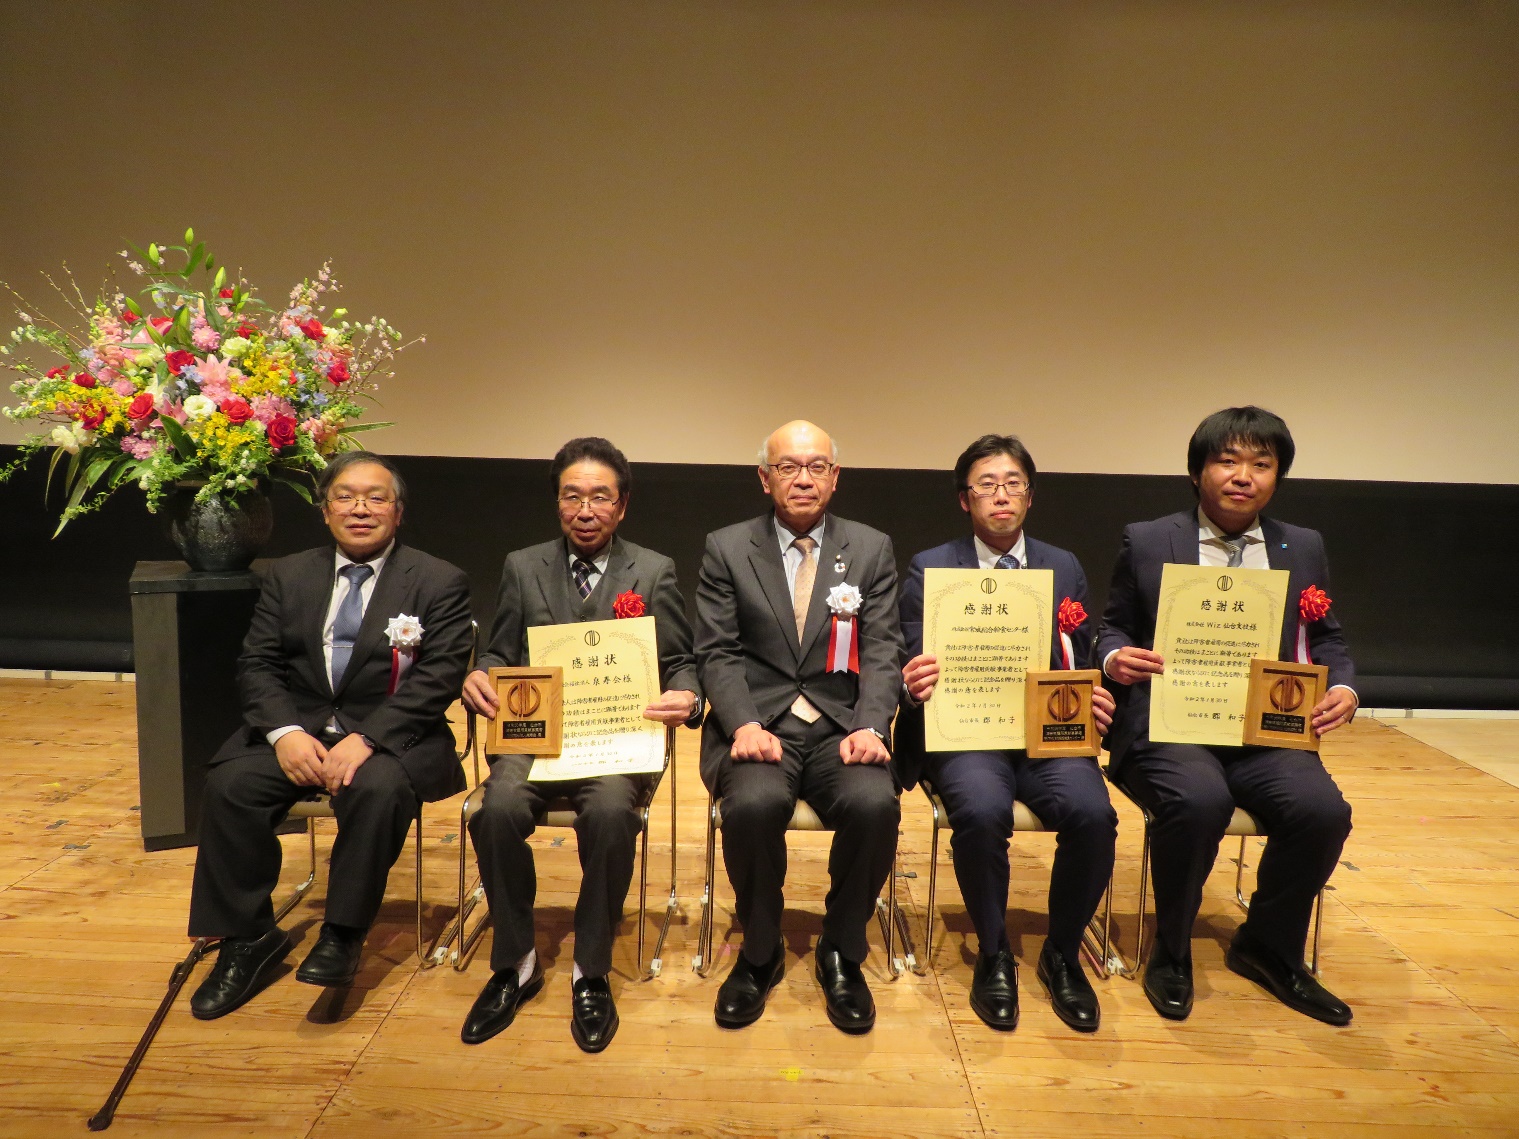 仙台市長と事業所の皆様の集合写真